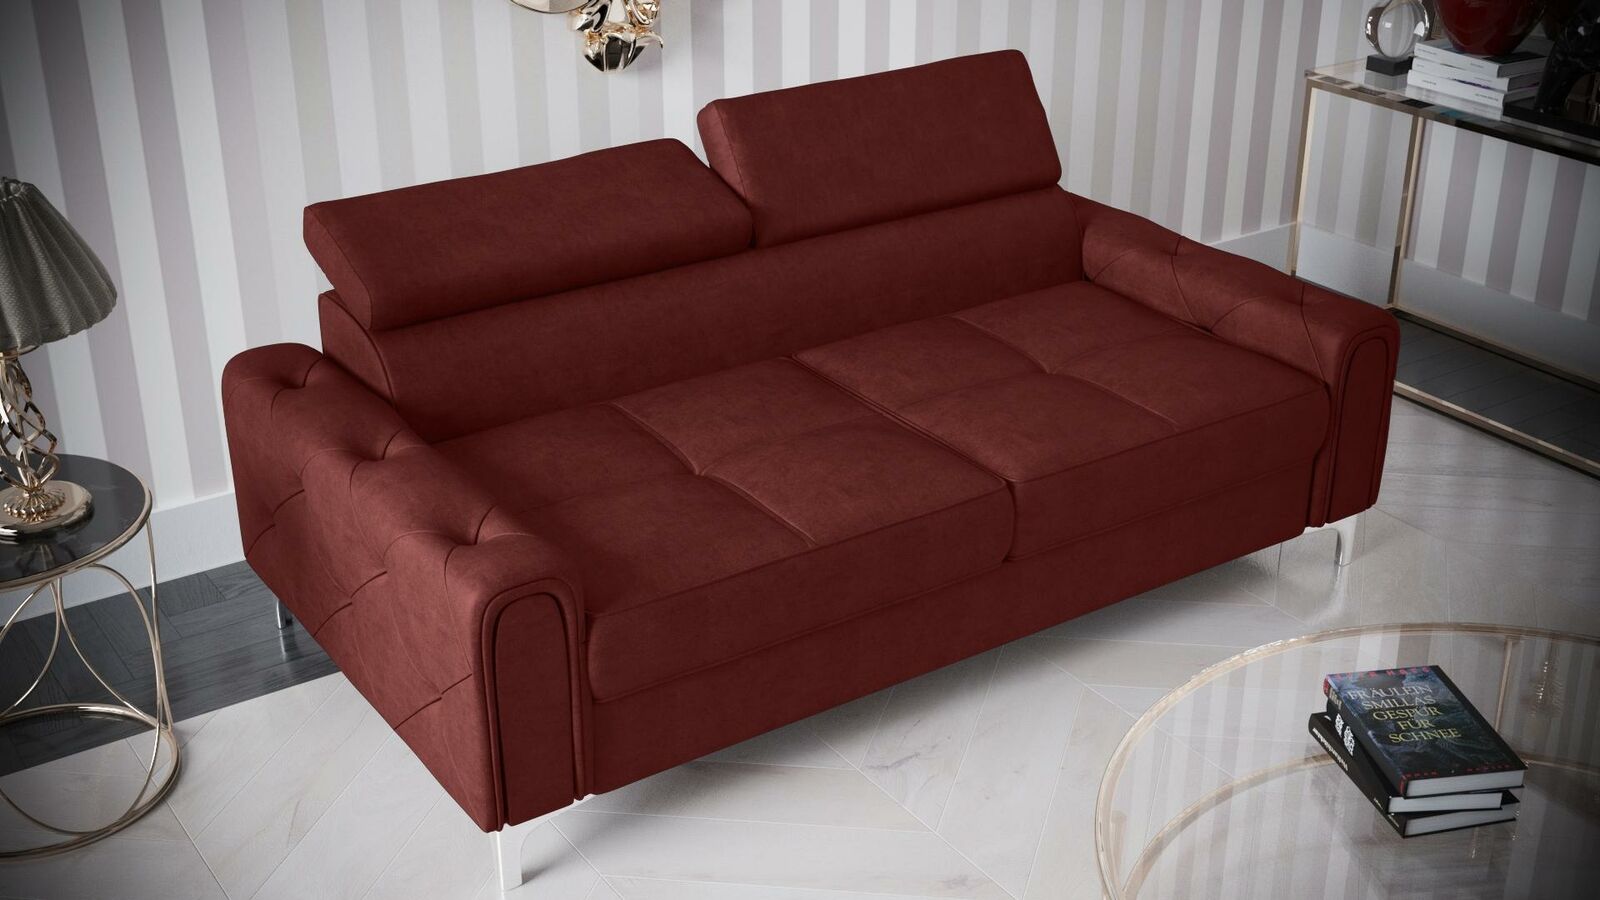 Design Couchen Luxus Polster Möbel Sofa Couch Sitz Leder Textil Neu 186x100cm